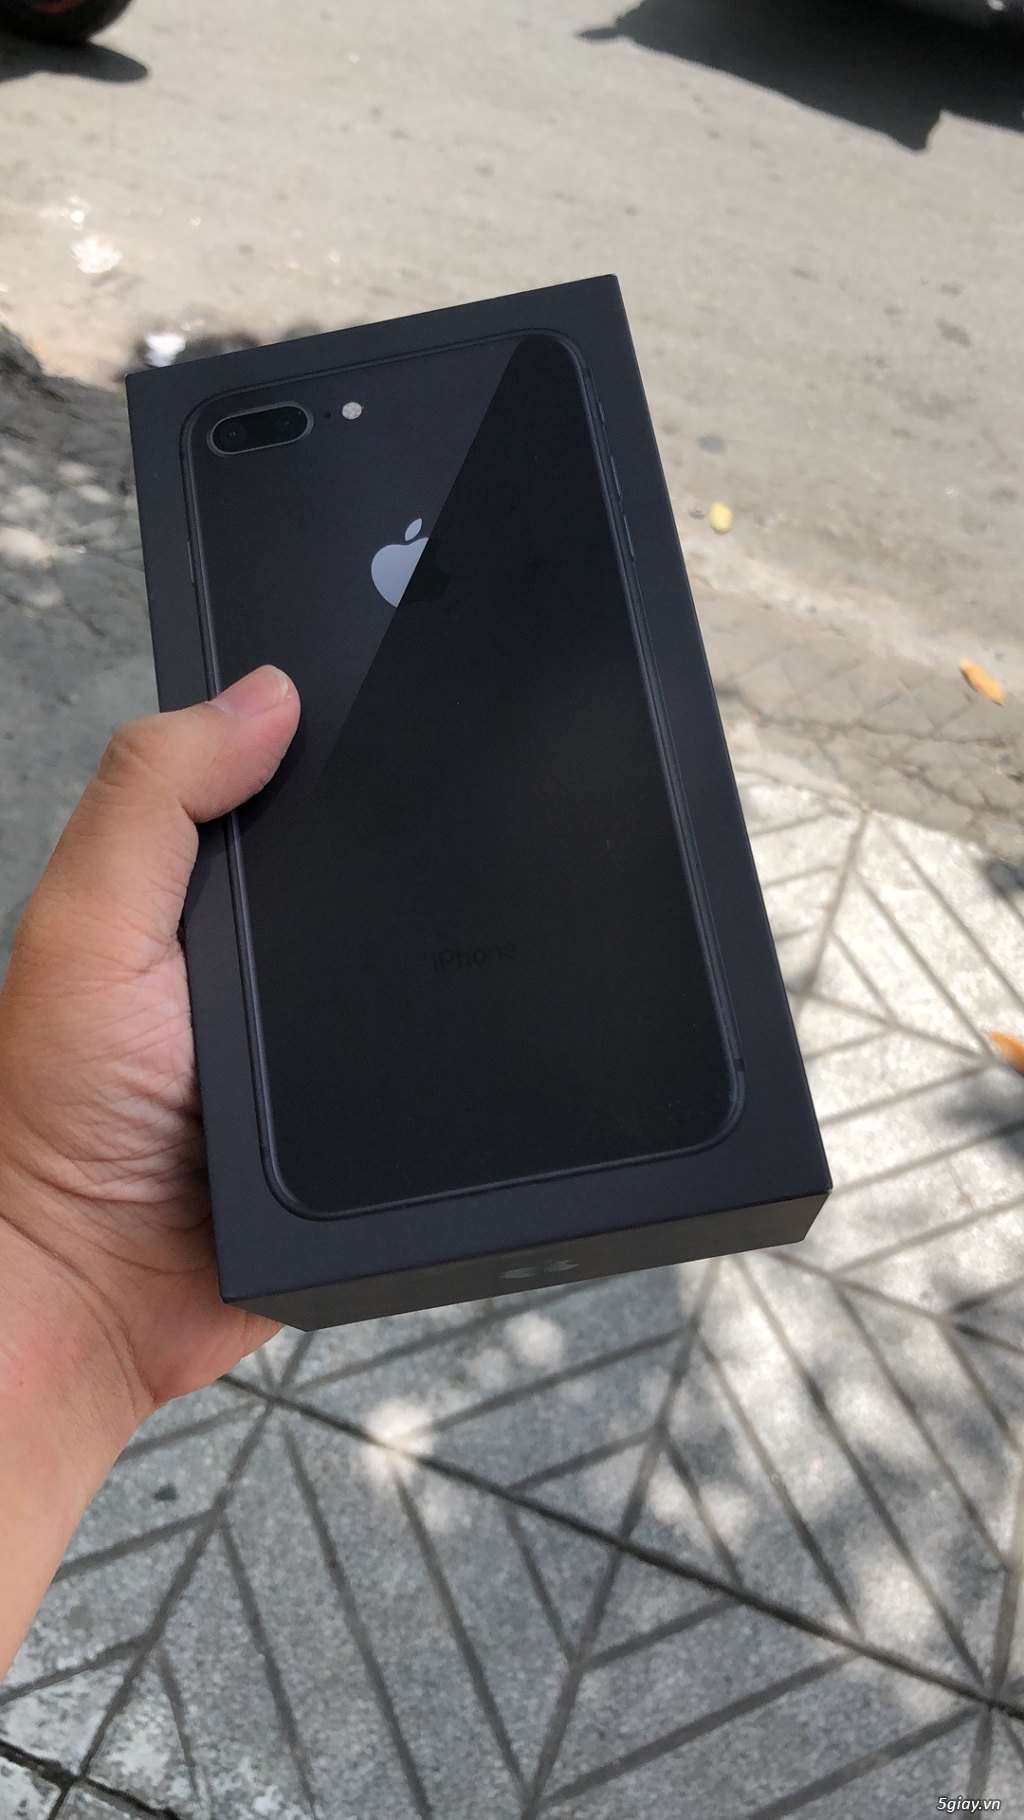 Iphone 8 Plus Đen 64GB NGUYÊN SEAL FULLBOX xách tay Singapore - 1